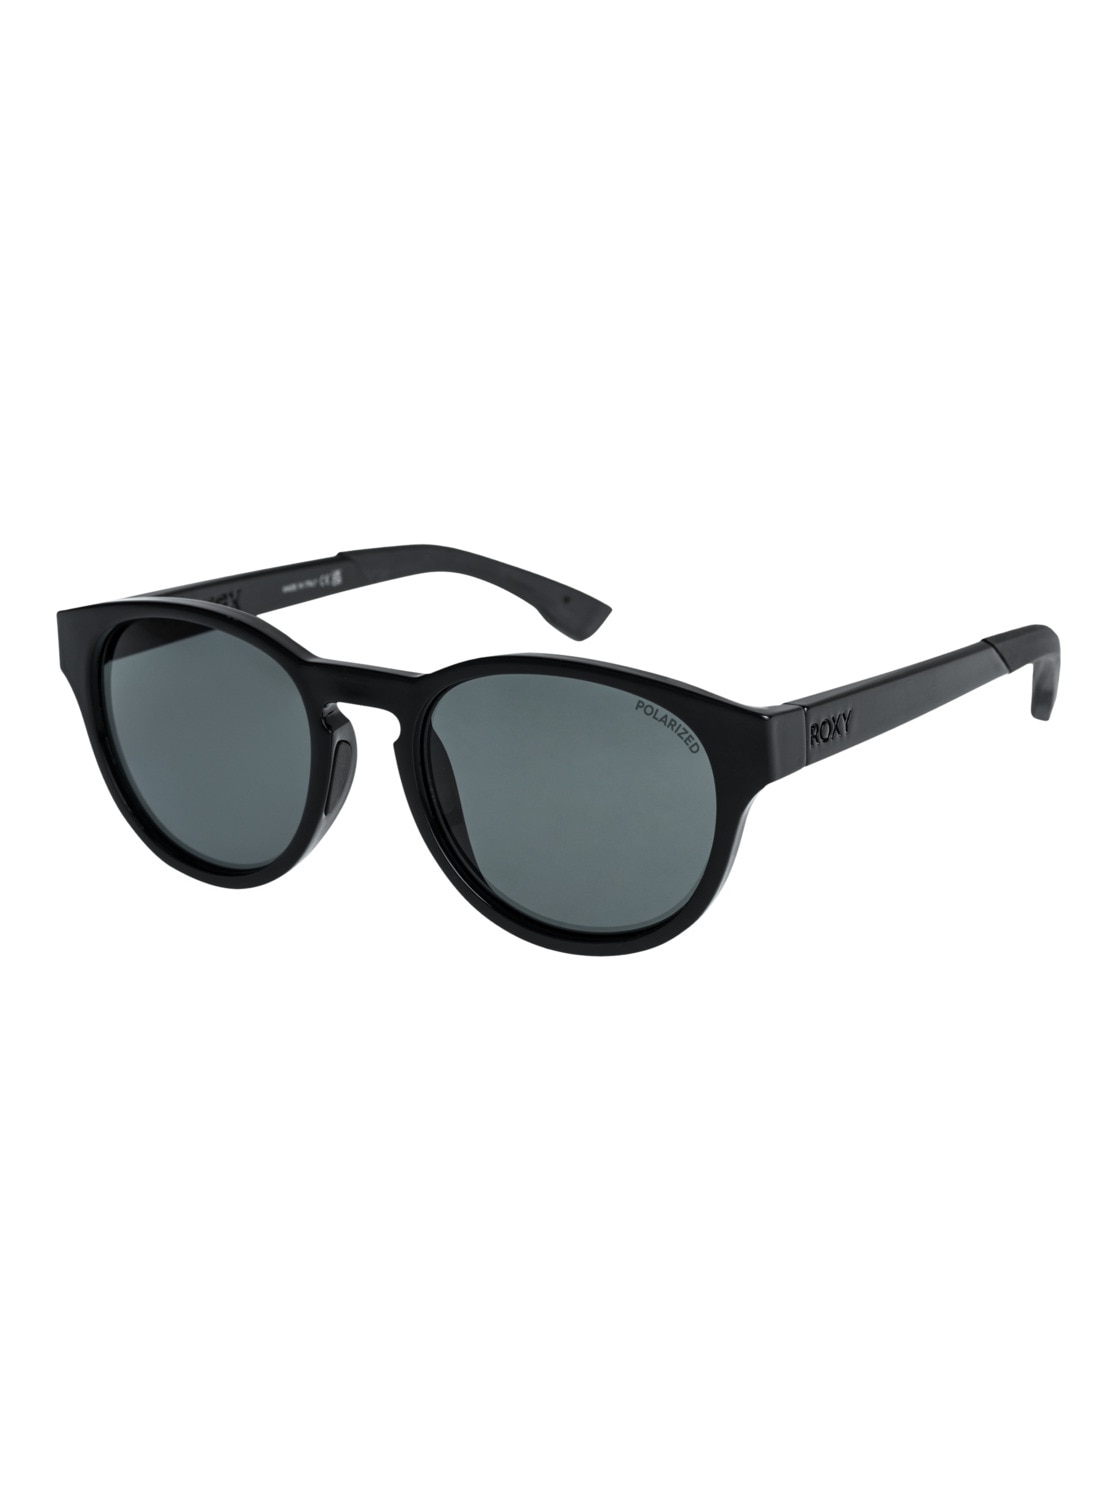 »Vertex Roxy P« bei OTTOversand Sonnenbrille